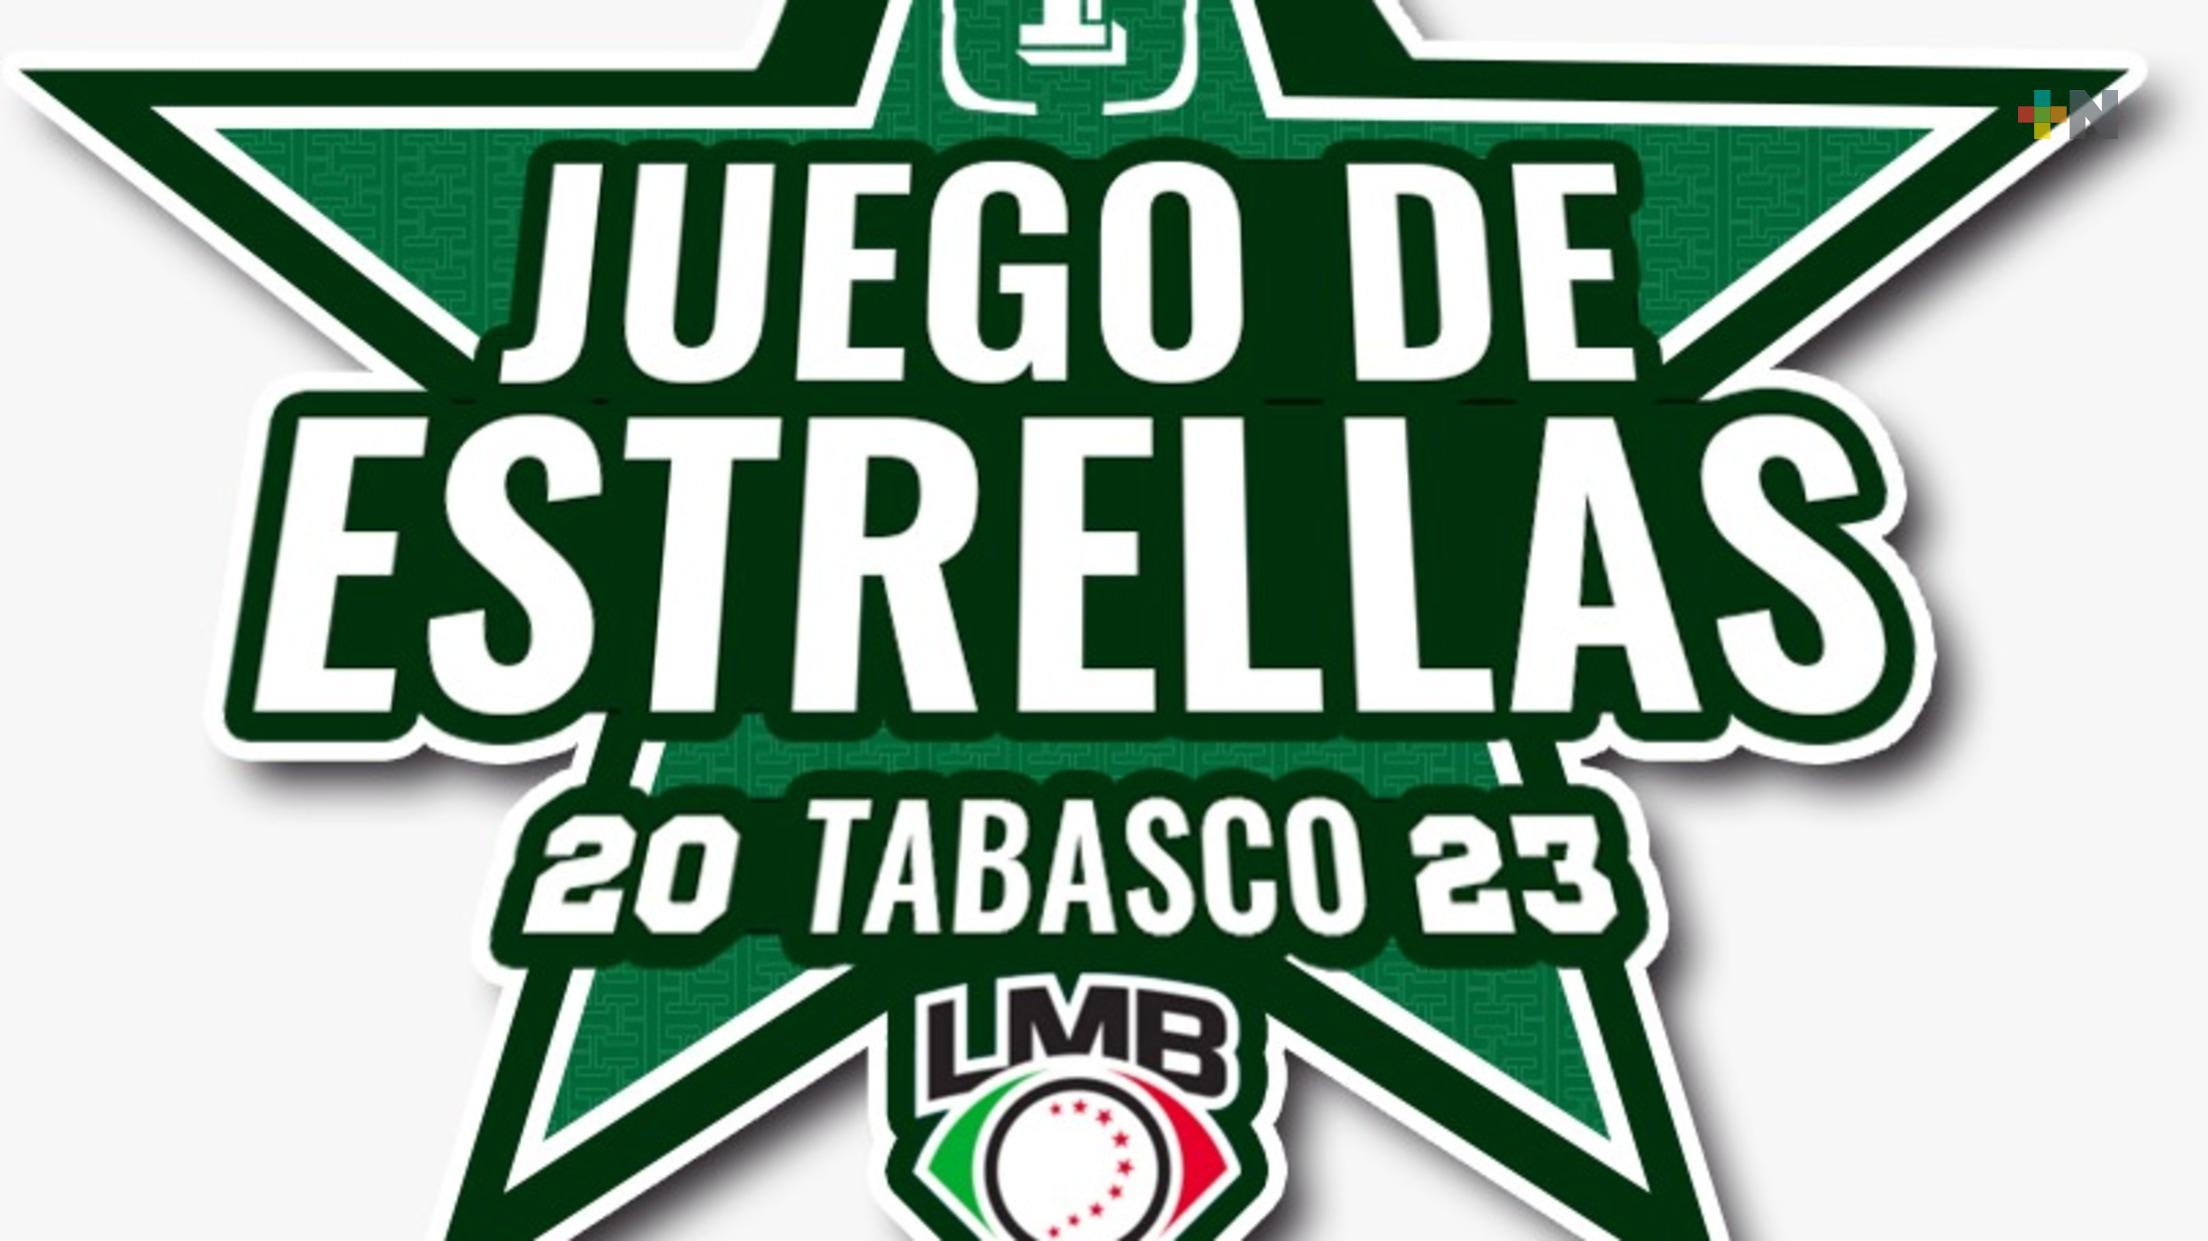 Juego de Estrellas LMB 2023 será en Tabasco